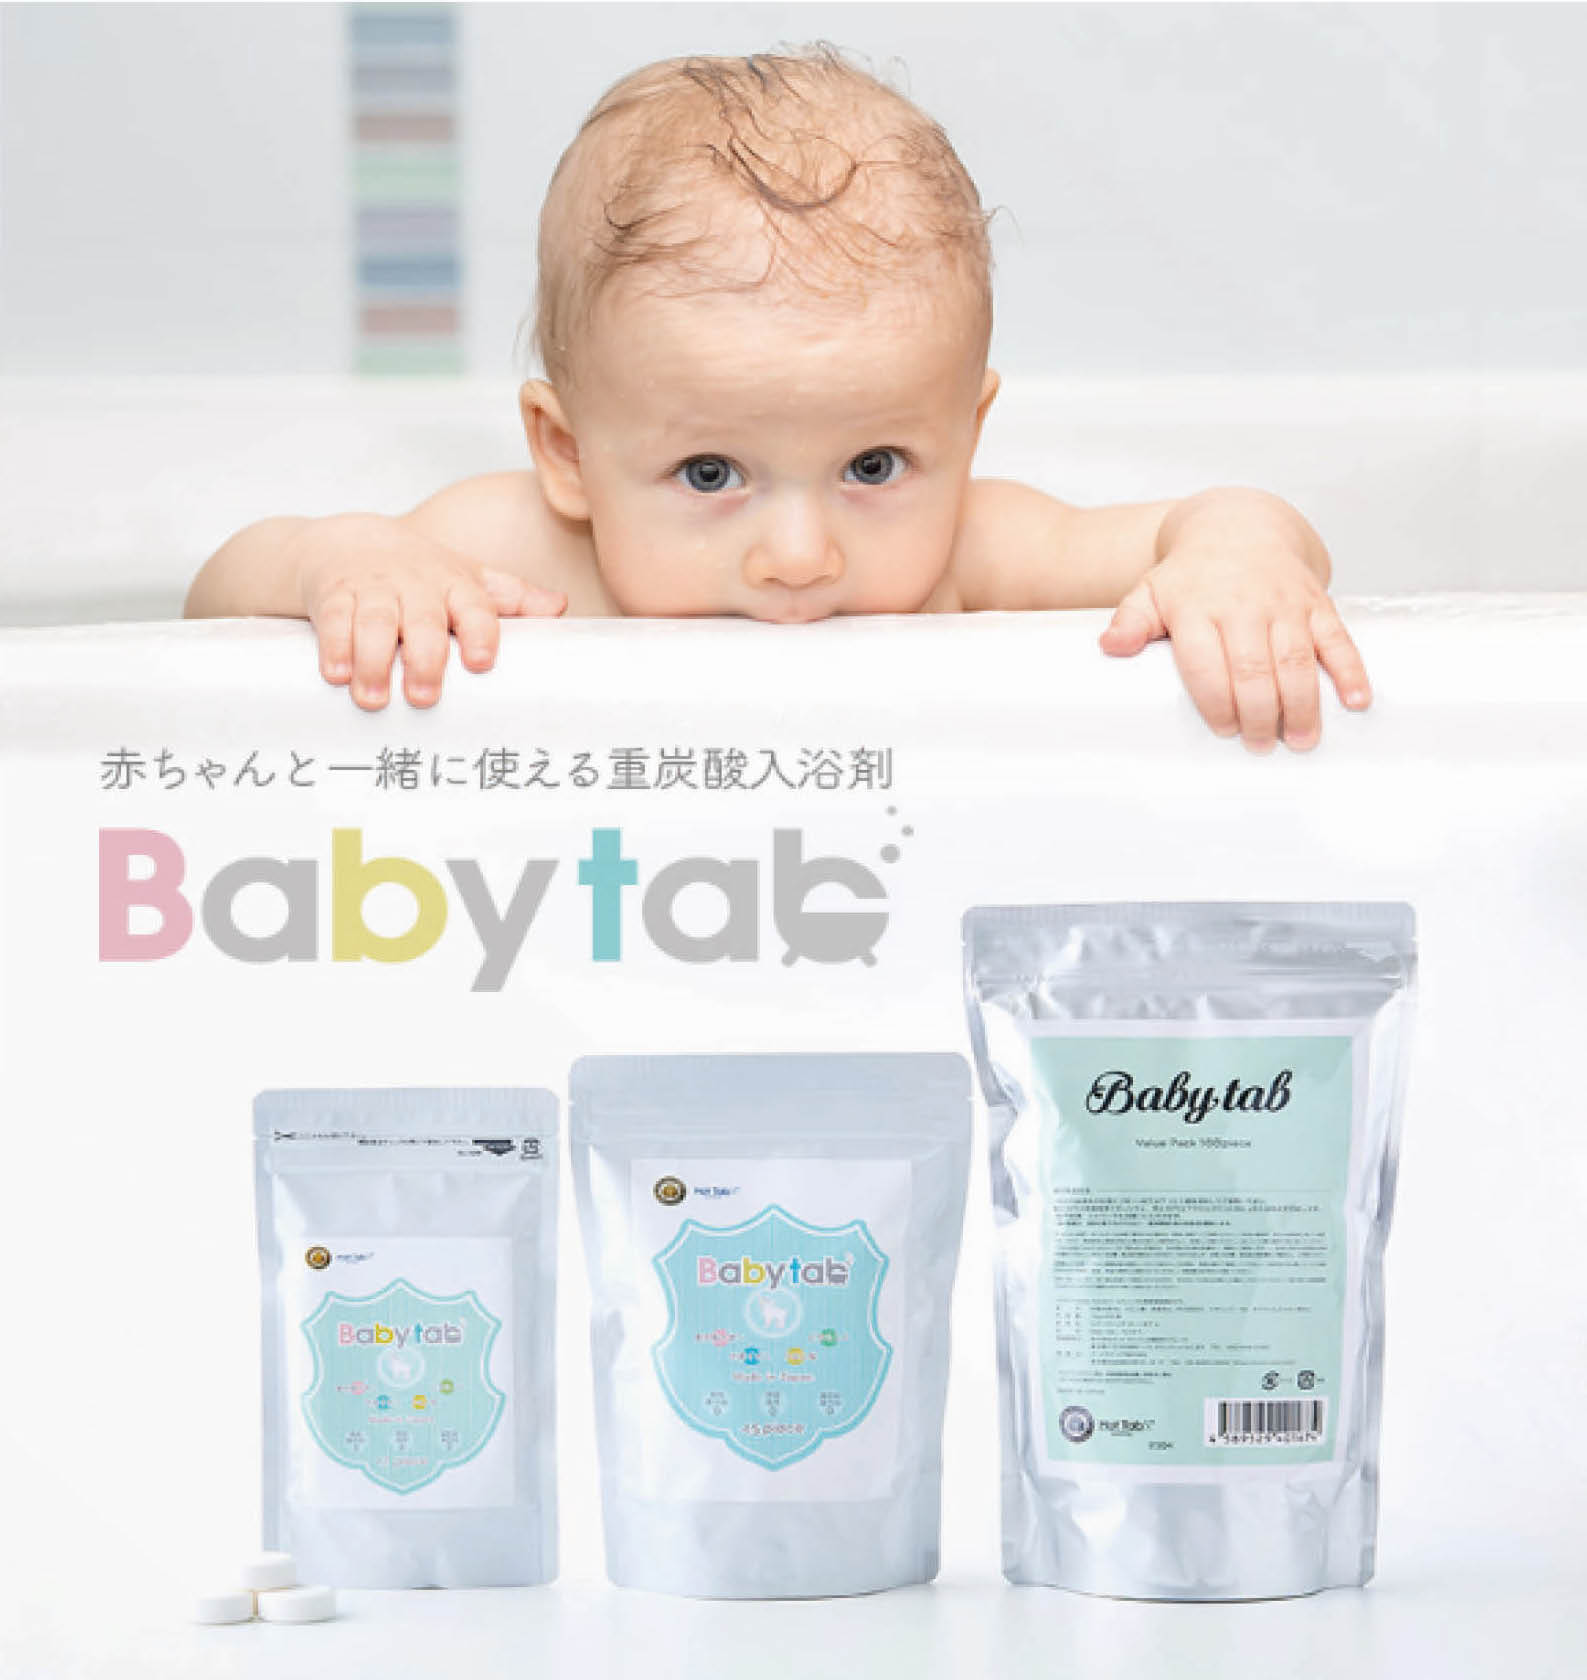 赤ちゃんから一緒 に使える無添加の重炭酸入浴剤 Babytab ベビタブ が 第13回ペアレンティングアワード のモノ部門を受賞 Bestunning株式会社のプレスリリース